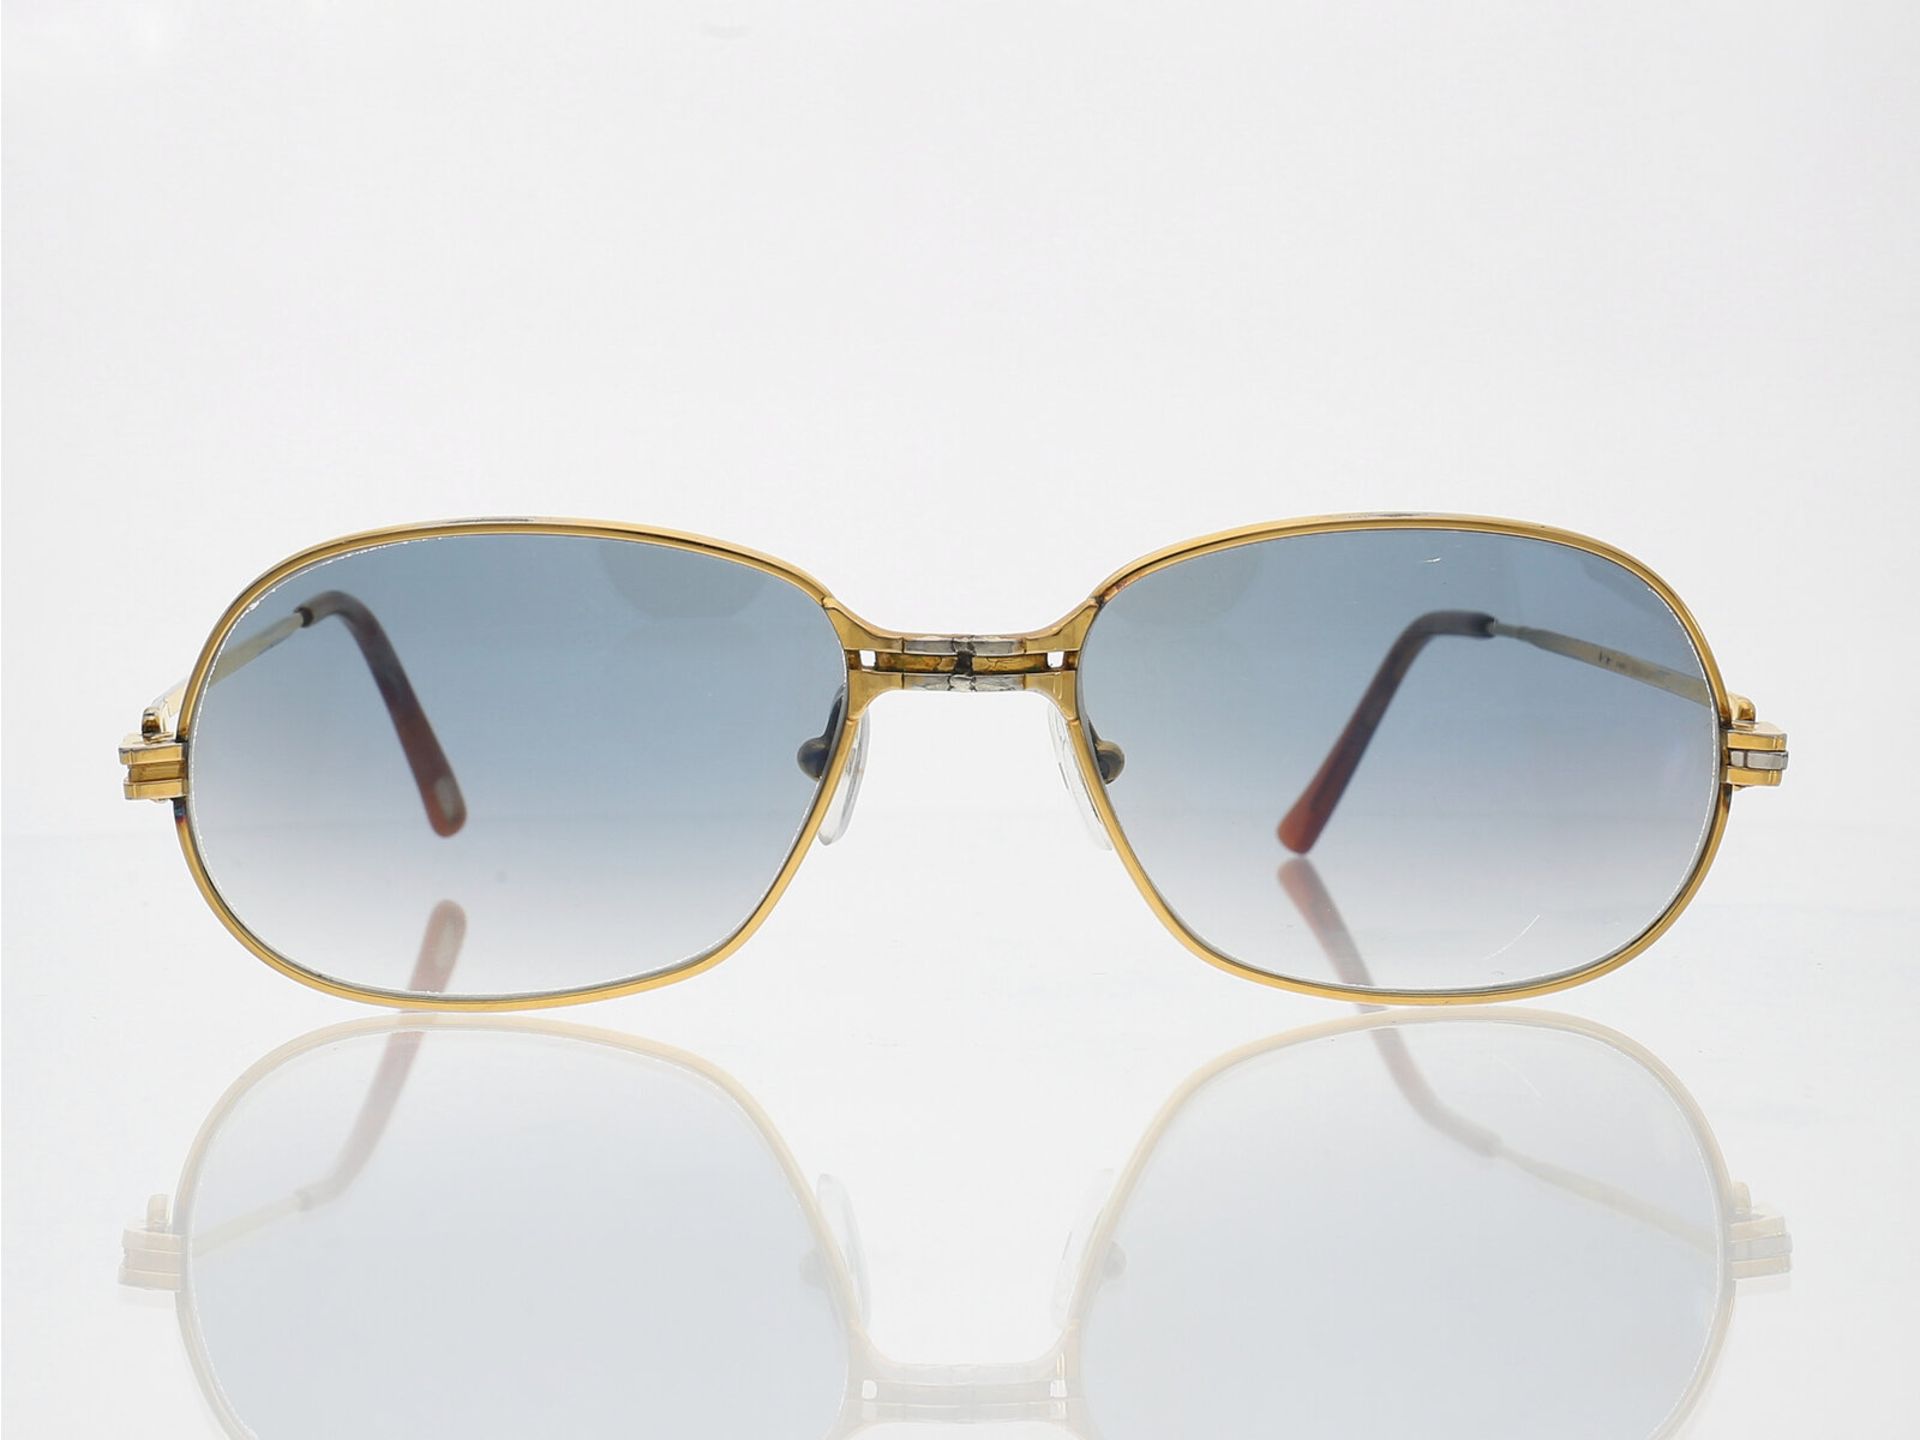 Brille: vintage Cartier Sonnenbrille "Modell 135" - Bild 2 aus 2